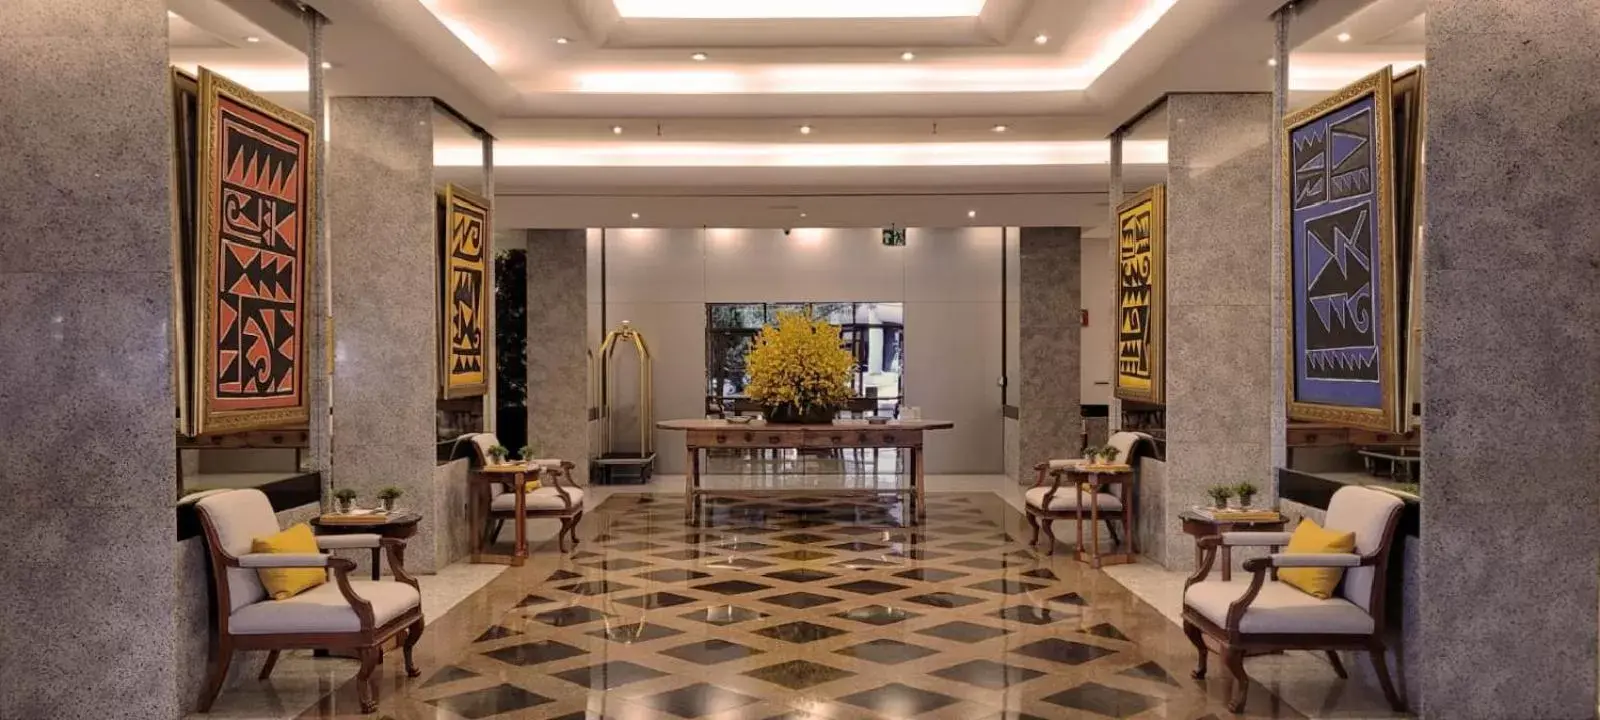 Lobby or reception, Lobby/Reception in Kubitschek Plaza Hotel